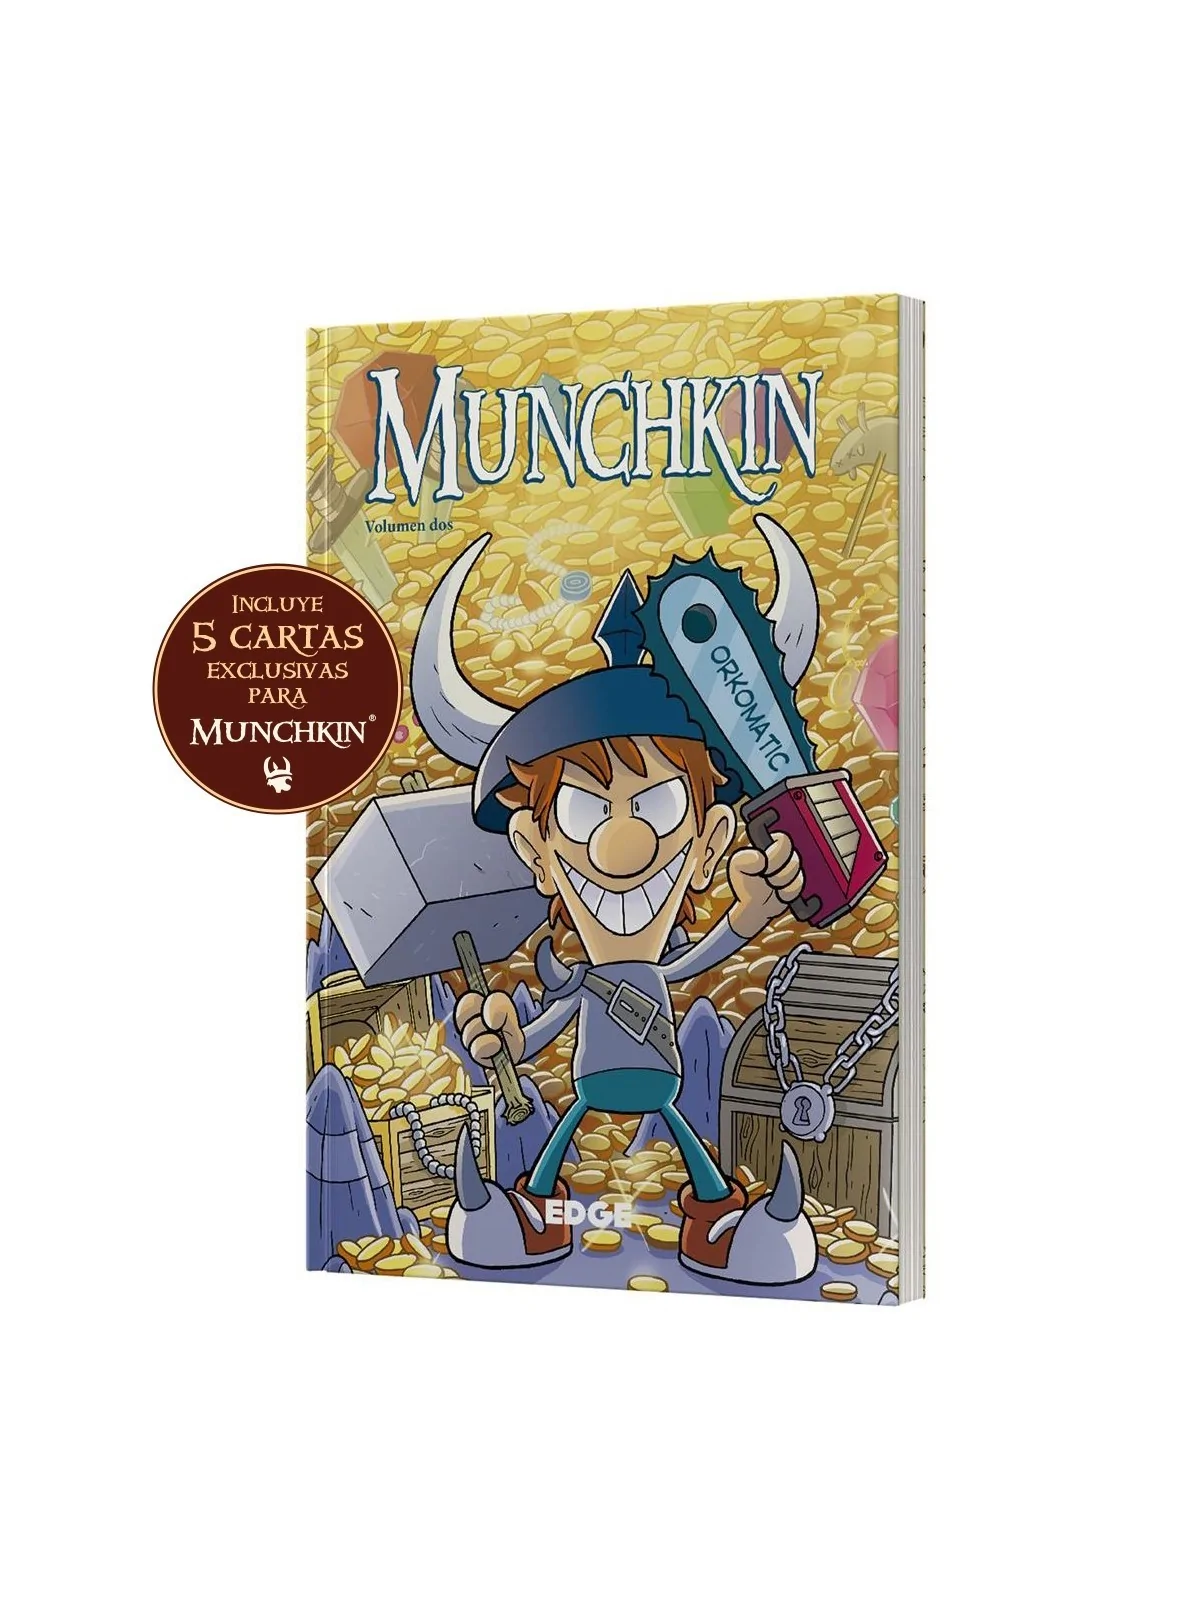 Comprar Munchkin Cómic Volumen Dos barato al mejor precio 14,24 € de E